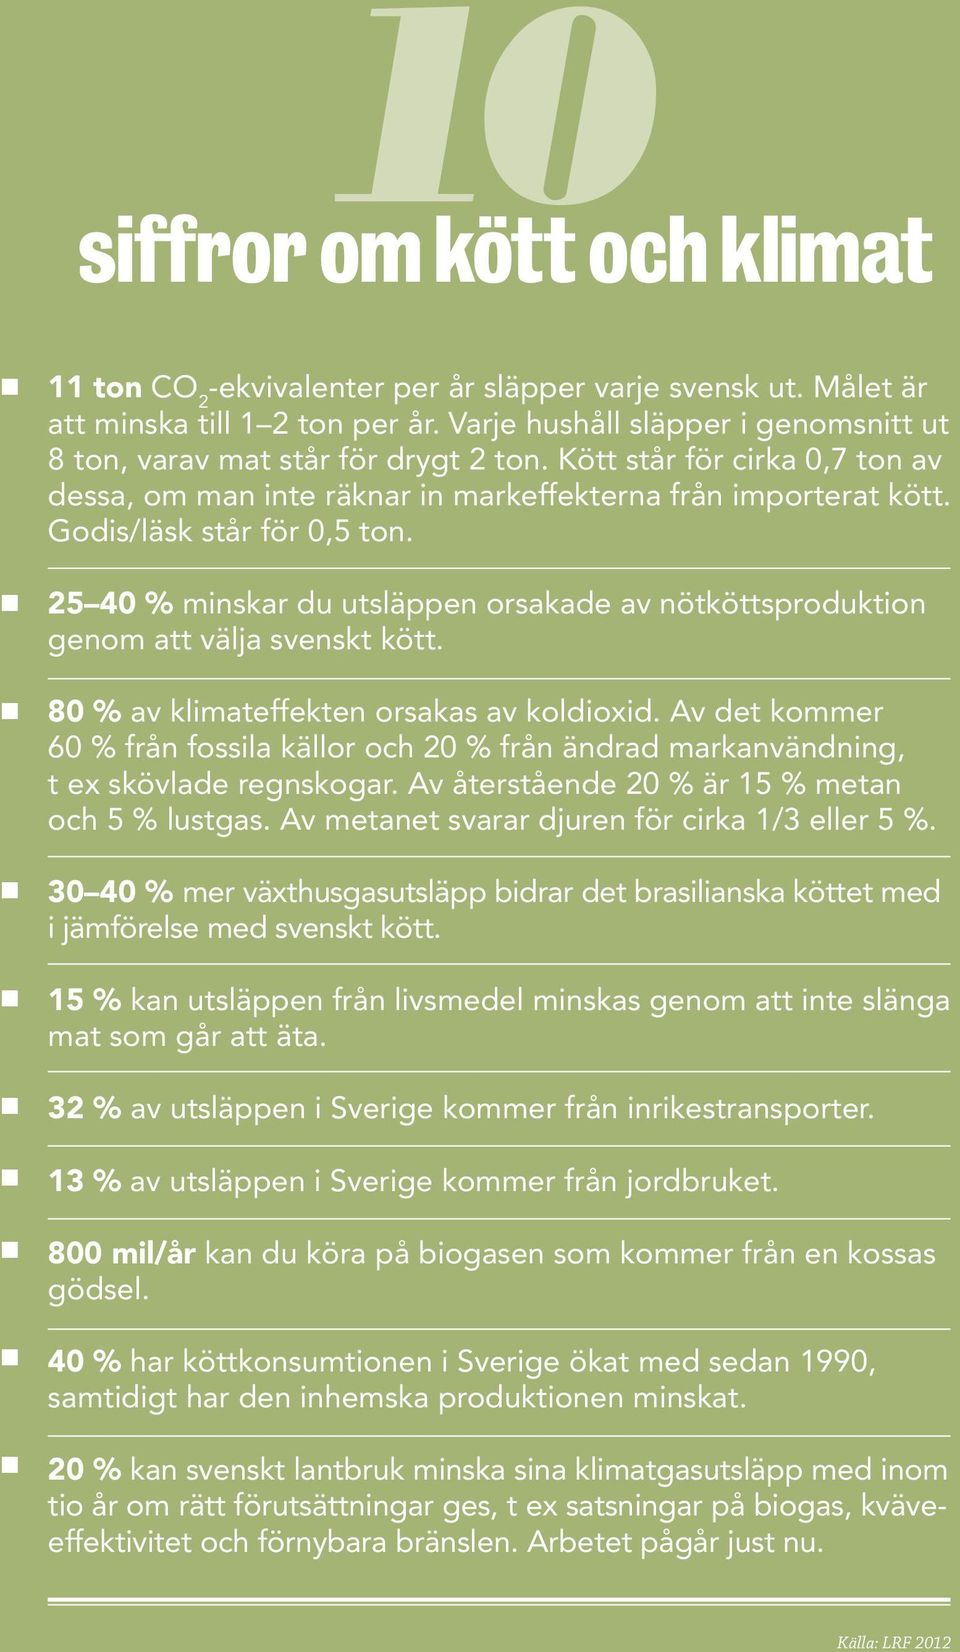 25 40 % minskar du utsläppen orsakade av nötköttsproduktion genom att välja svenskt kött. 80 % av klimateffekten orsakas av koldioxid.